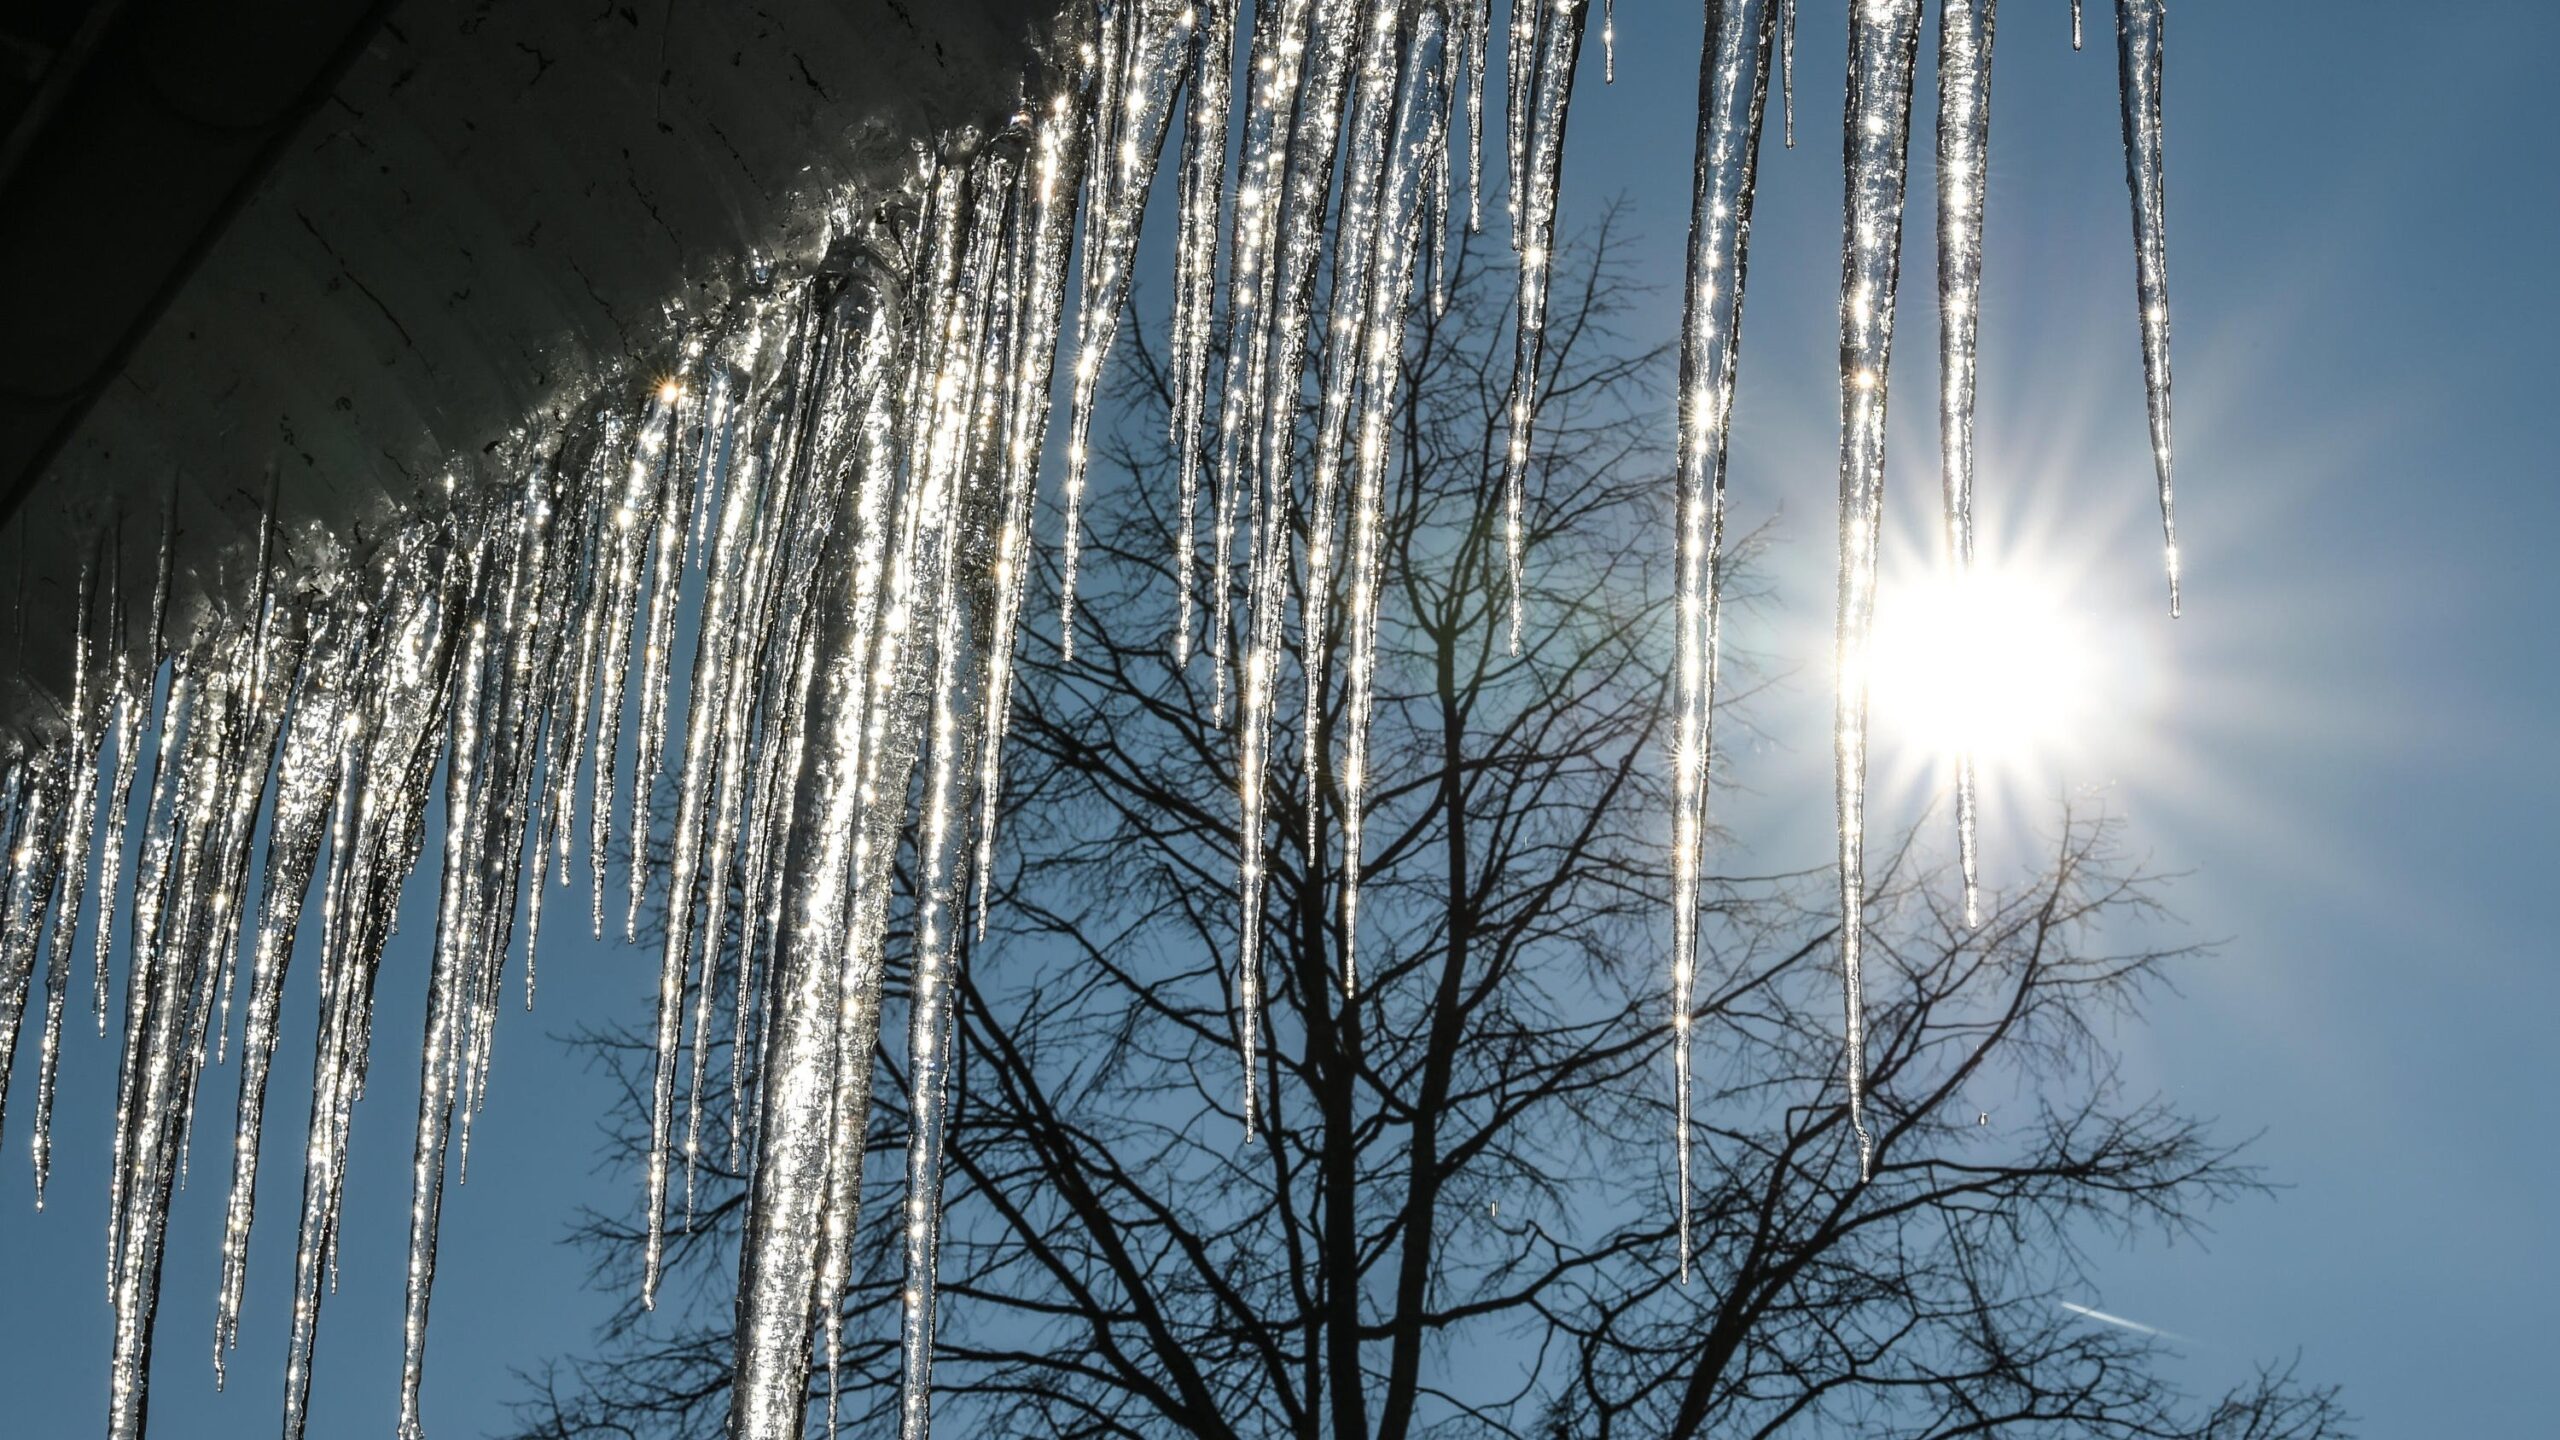 Cреднегодовая температура воздуха в Якутии может вырасти почти на 8°C к концу века